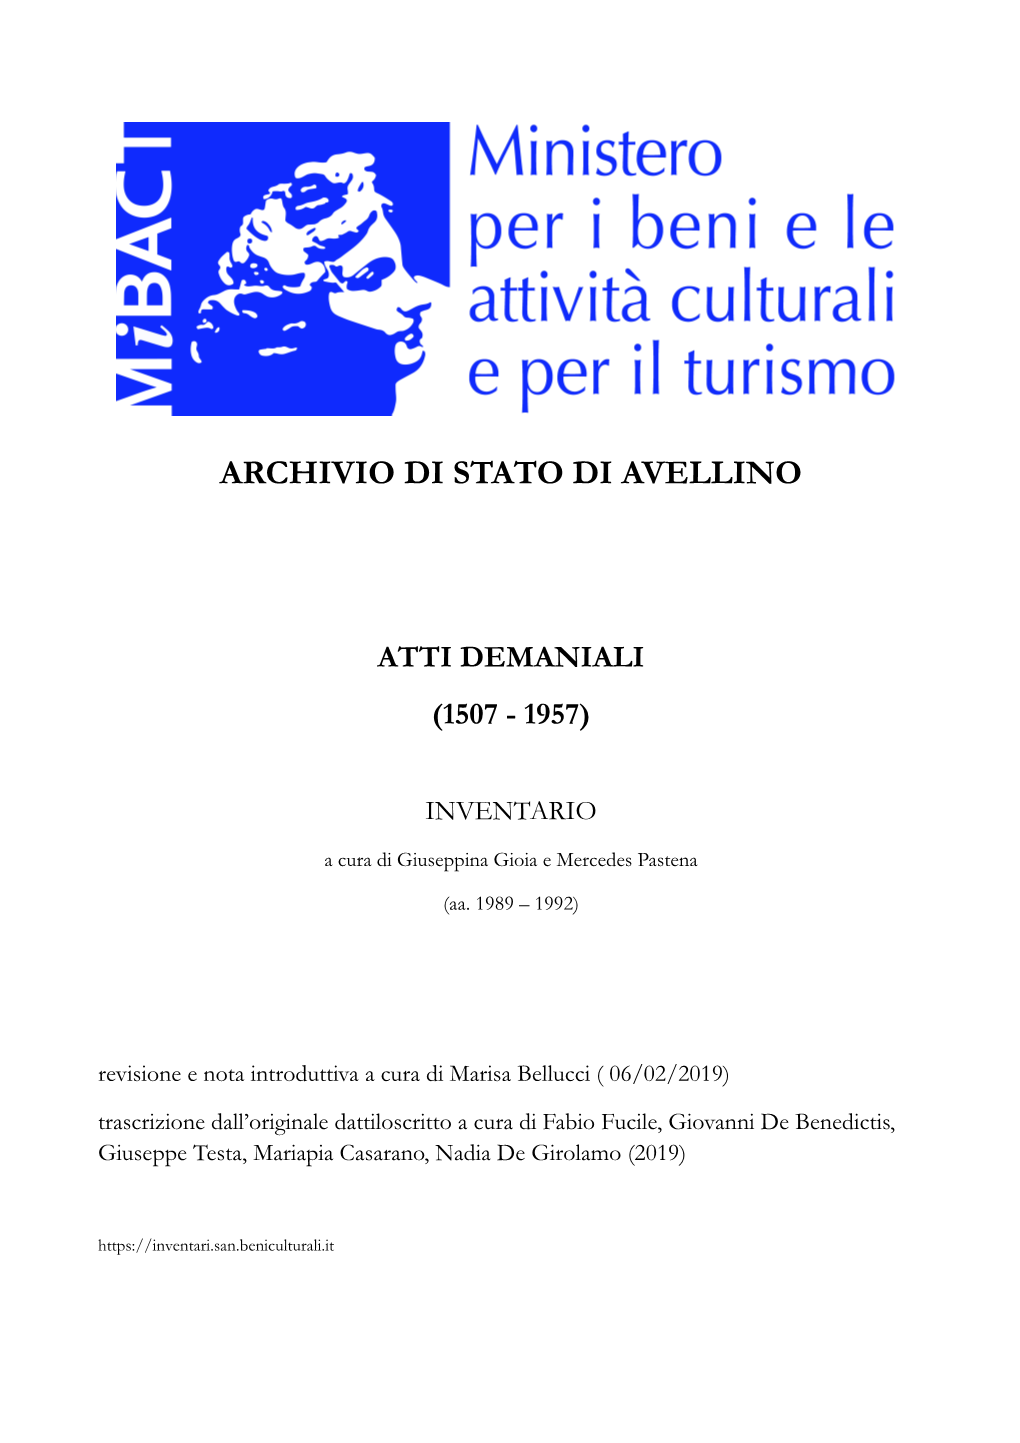 Archivio Di Stato Di Avellino